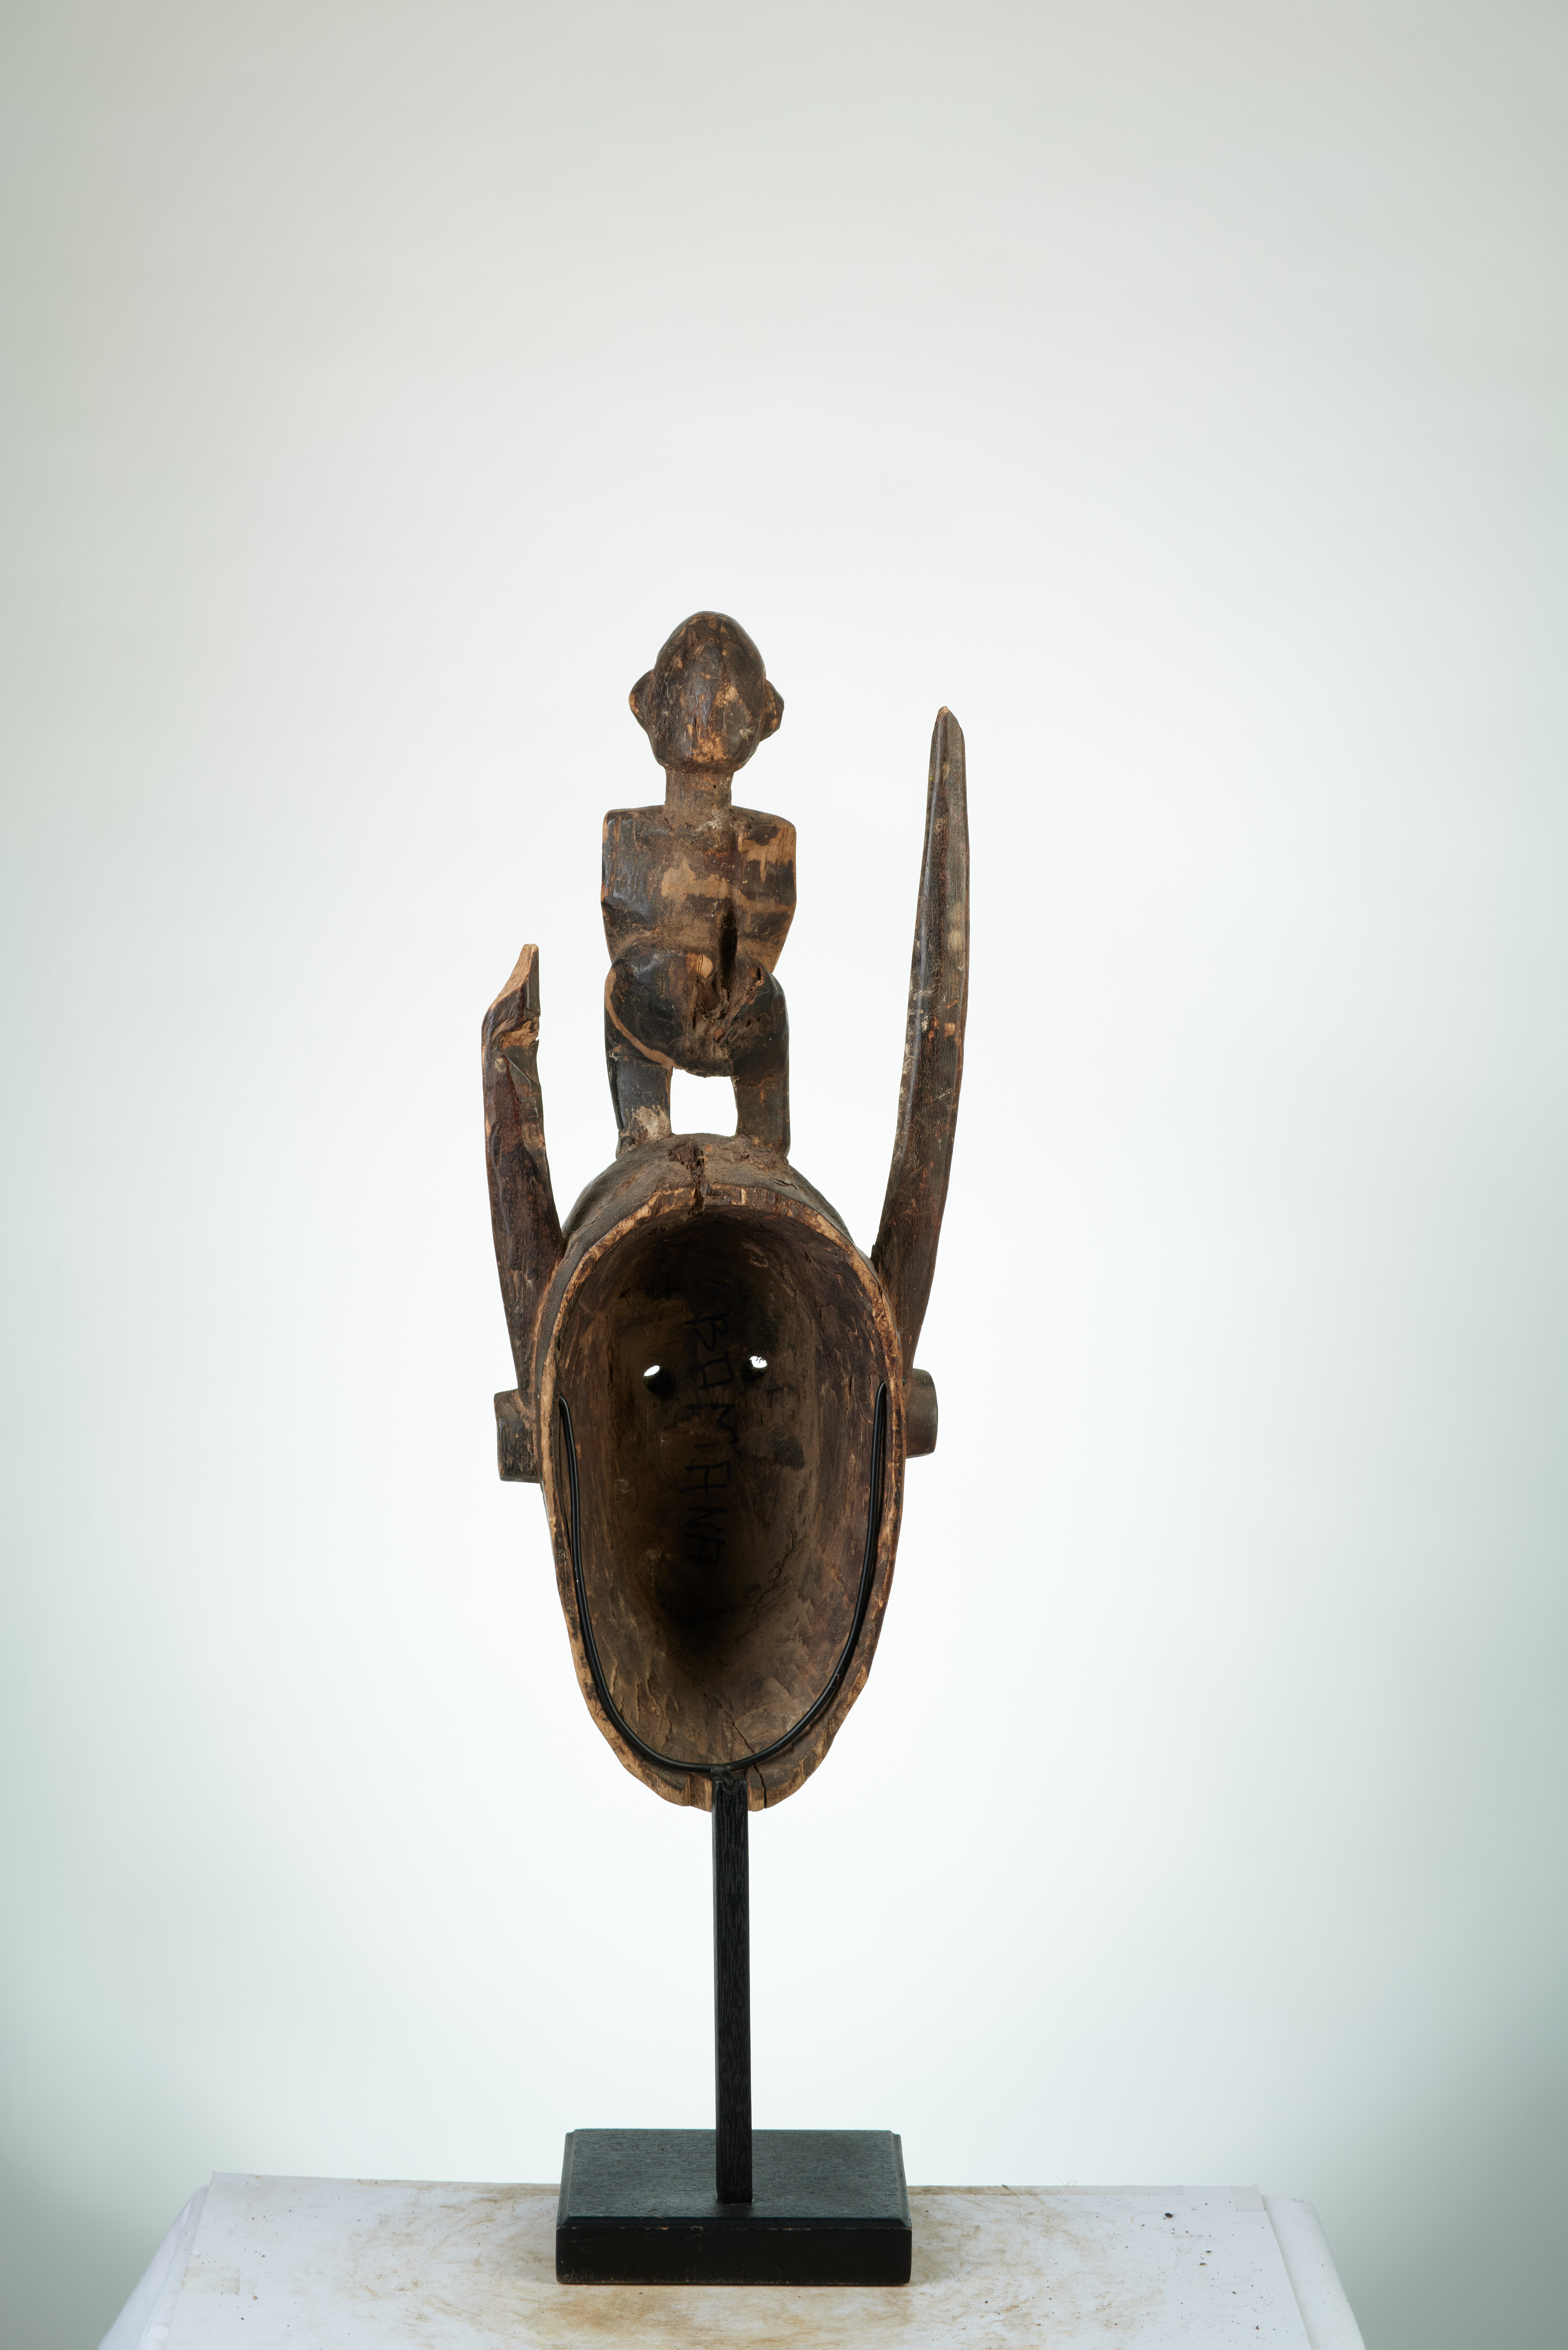 bambara(masque à statue), d`afrique : MALI, statuette bambara(masque à statue), masque ancien africain bambara(masque à statue), art du MALI - Art Africain, collection privées Belgique. Statue africaine de la tribu des bambara(masque à statue), provenant du MALI, 1856:Très beau masque Bambara portant un personnage audessus entre deux cornes et ayant subi des libations.Masque avec des scarifications sur le front et dans le visage.
H.52cm.(col Simon Duchatel de la Howarderie)
1ère moitié du 20eme sc.

Heel mooi Bambara masker met een man bovenop tussen twee horens.Het masker heeft offrandes 
ondergaan.Het heeft scarificaties op het voorhoofd en in het aangezicht.H.52cm.(Kol.Simon Duchatel de la Howarderie.)1ste helft 20ste eeuw.. art,culture,masque,statue,statuette,pot,ivoire,exposition,expo,masque original,masques,statues,statuettes,pots,expositions,expo,masques originaux,collectionneur d`art,art africain,culture africaine,masque africain,statue africaine,statuette africaine,pot africain,ivoire africain,exposition africain,expo africain,masque origina africainl,masques africains,statues africaines,statuettes africaines,pots africains,expositions africaines,expo africaines,masques originaux  africains,collectionneur d`art africain